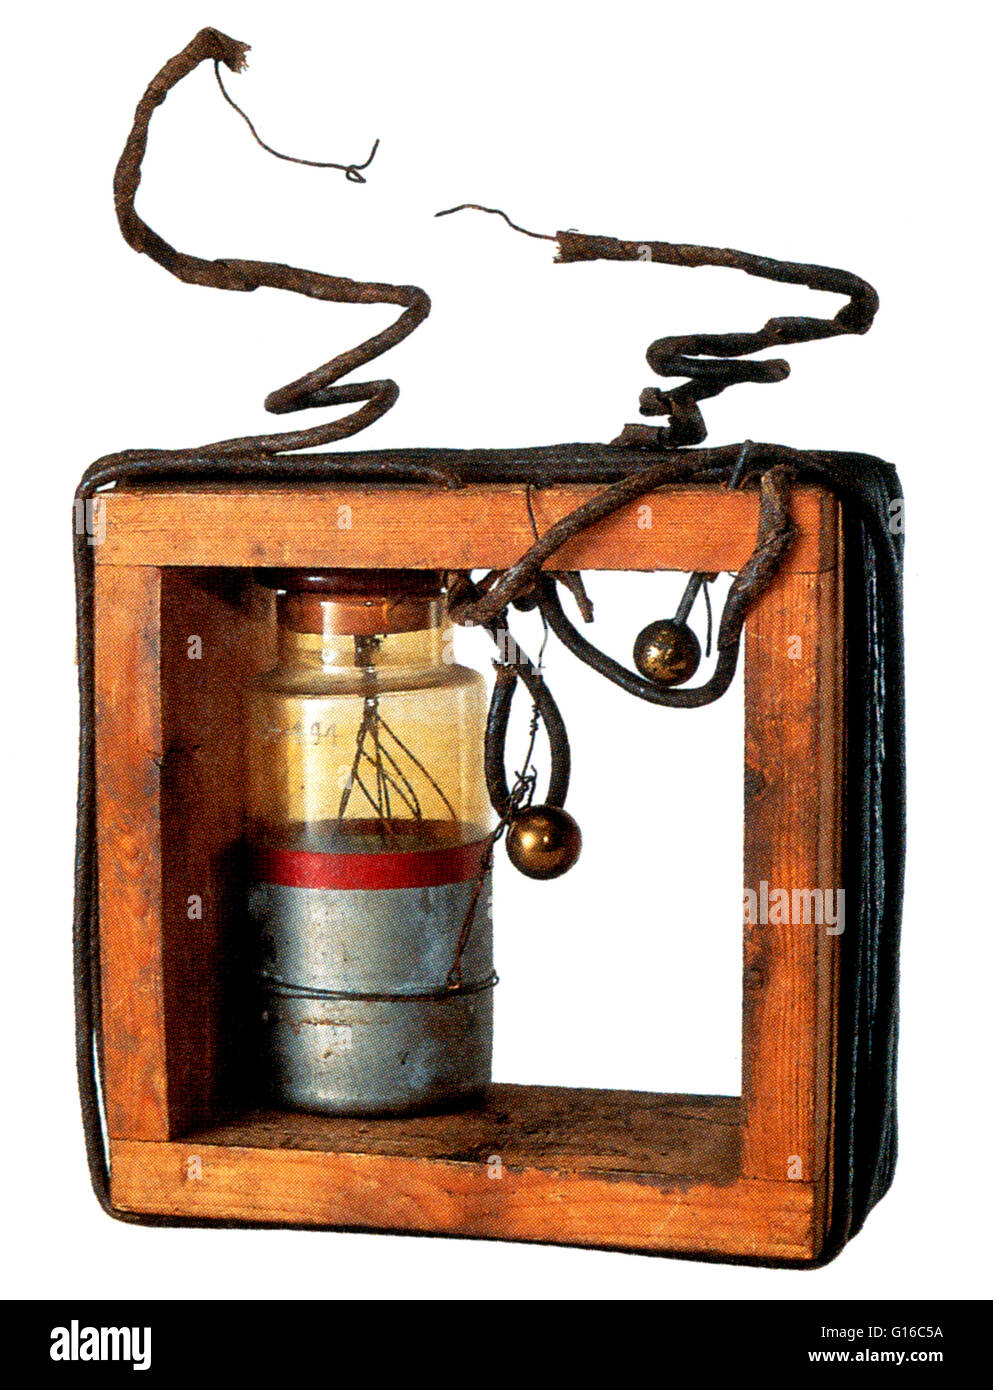 Trasmettitore sintonizzato, da Guglielmo Marconi, 1897. Marconi ha iniziato a sperimentare con la telegrafia senza fili nei primi 1890s. Nel 1895 è riuscita a trasmettere su una distanza di 1 1/4 miglia. Il suo primo trasmettitore era costituito da una bobina di induzione collegato scommessa Foto Stock